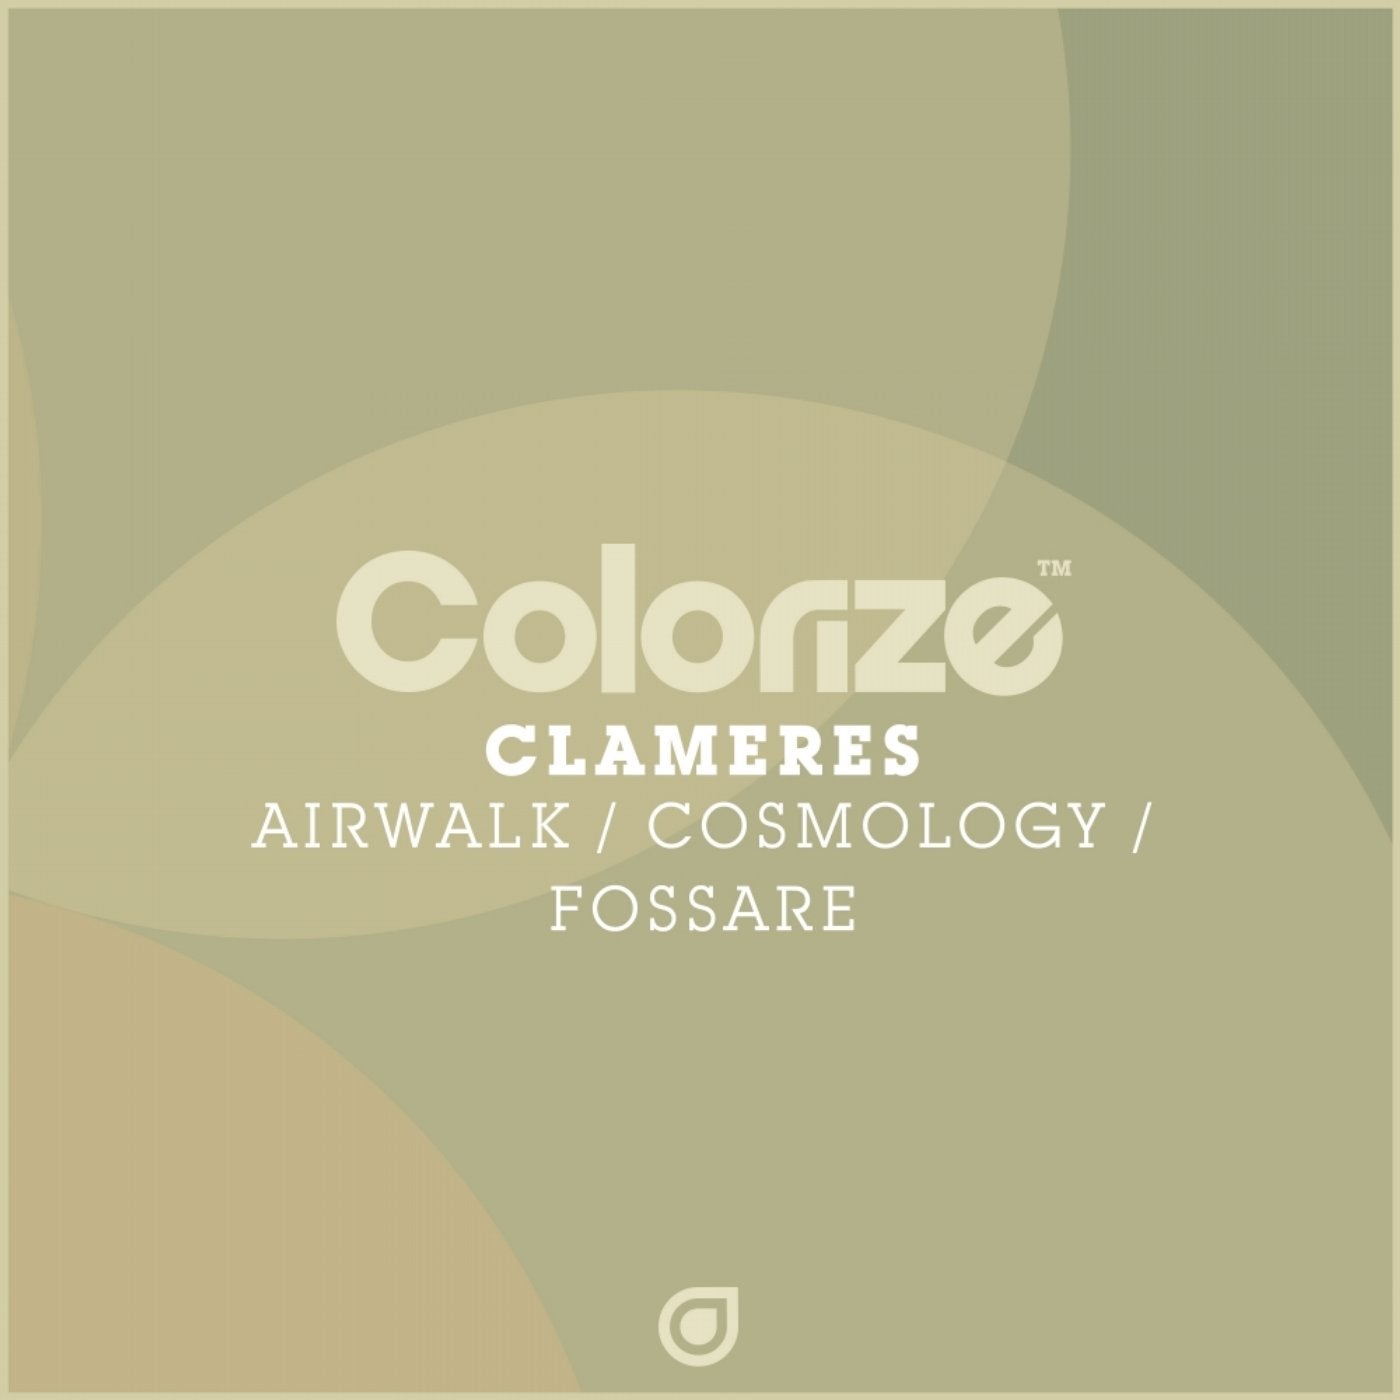 Airwalk / Cosmology / Fossare